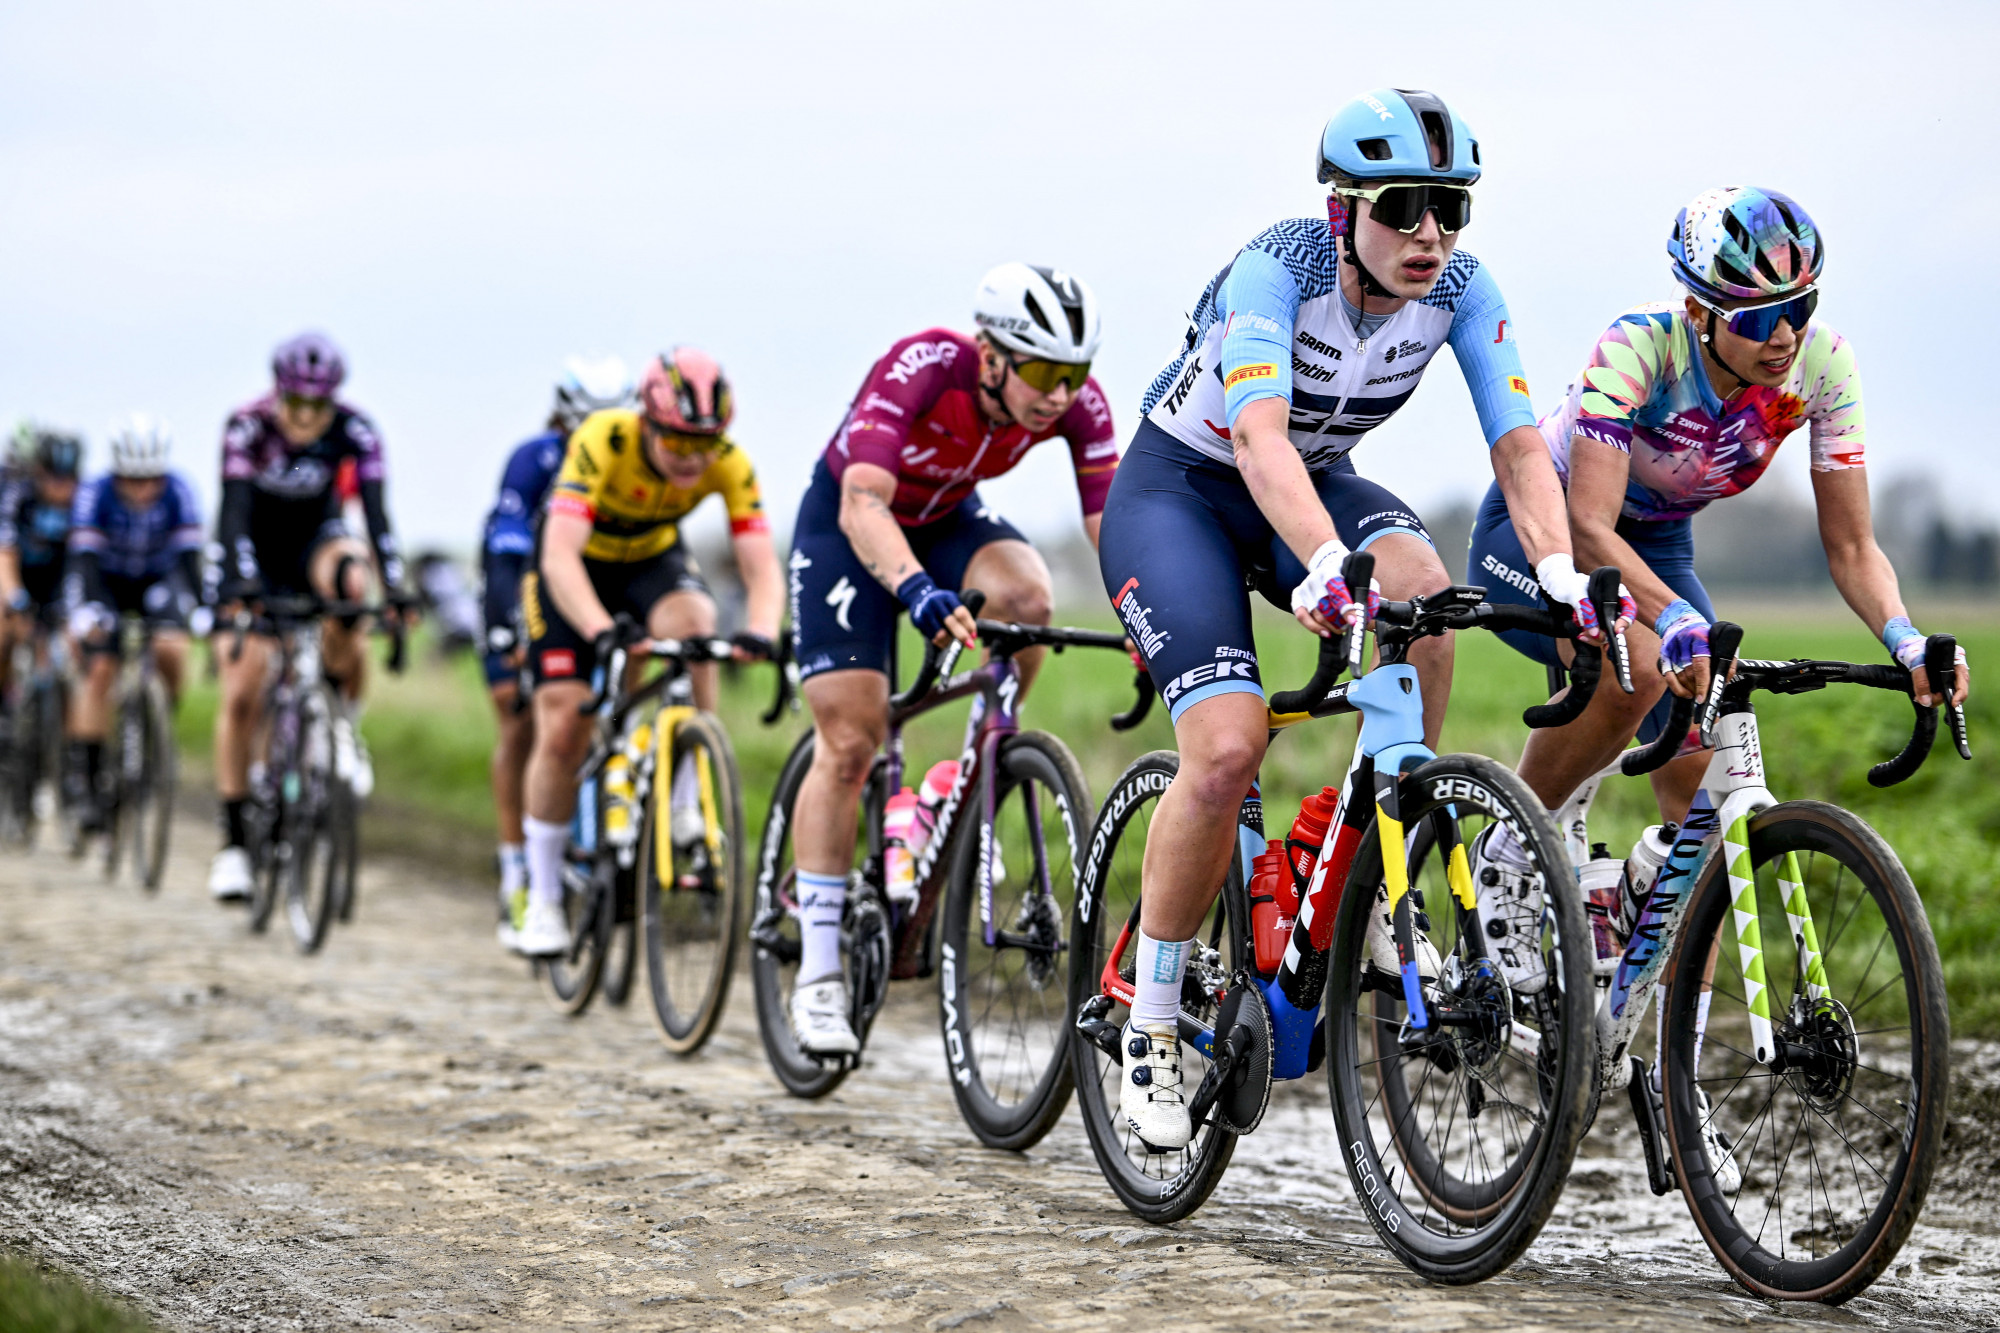 Kizárják a transznőket a női kategóriából a brit profi kerékpárversenyeken